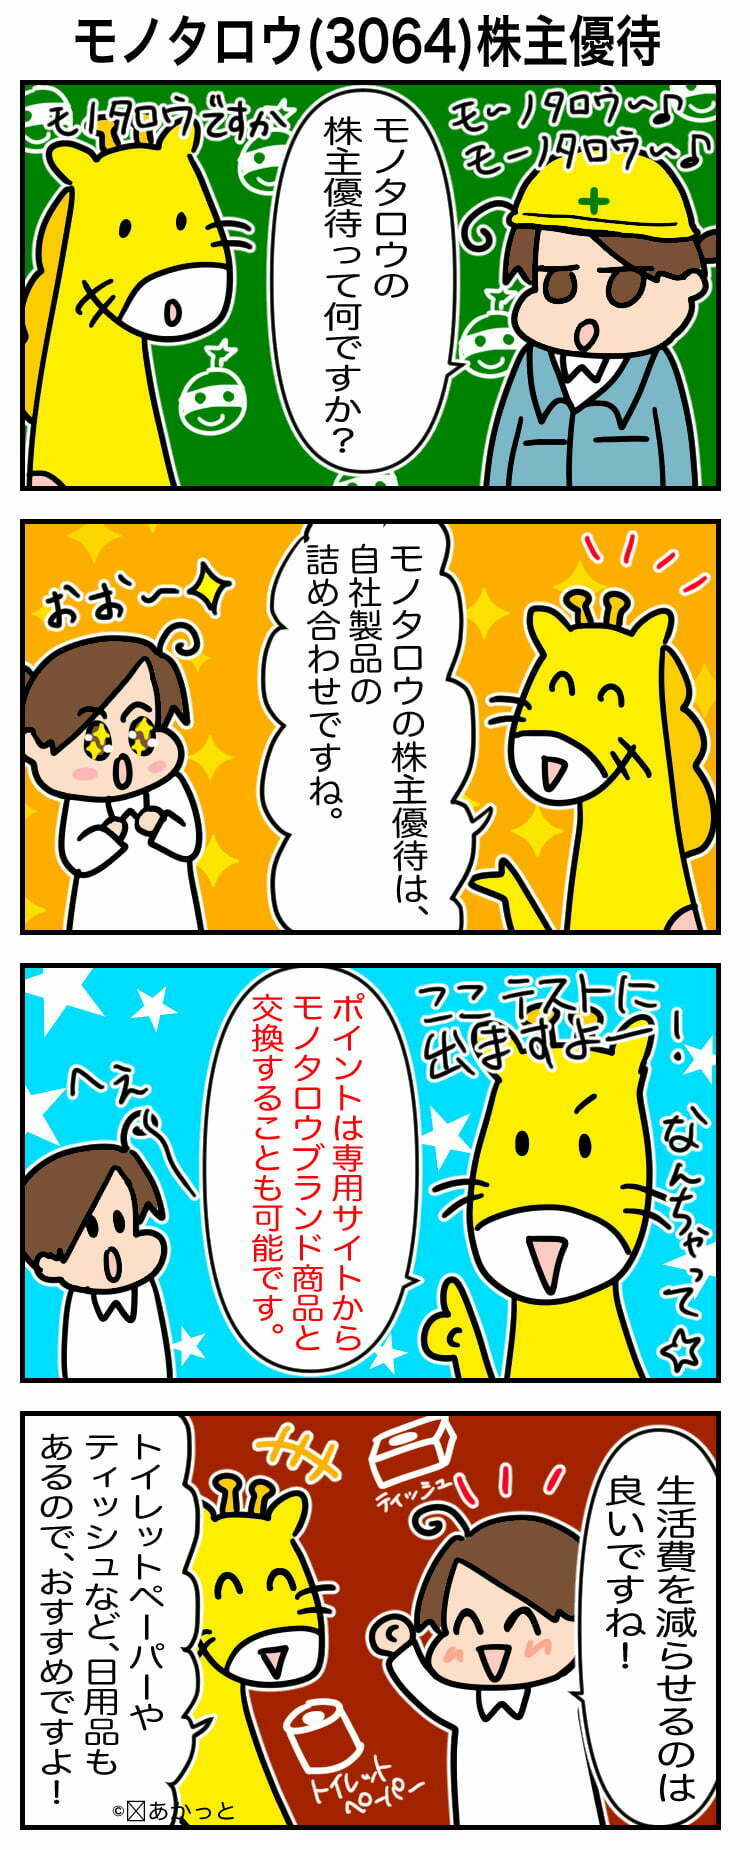 モノタロウ(3064)株主優待についての解説漫画